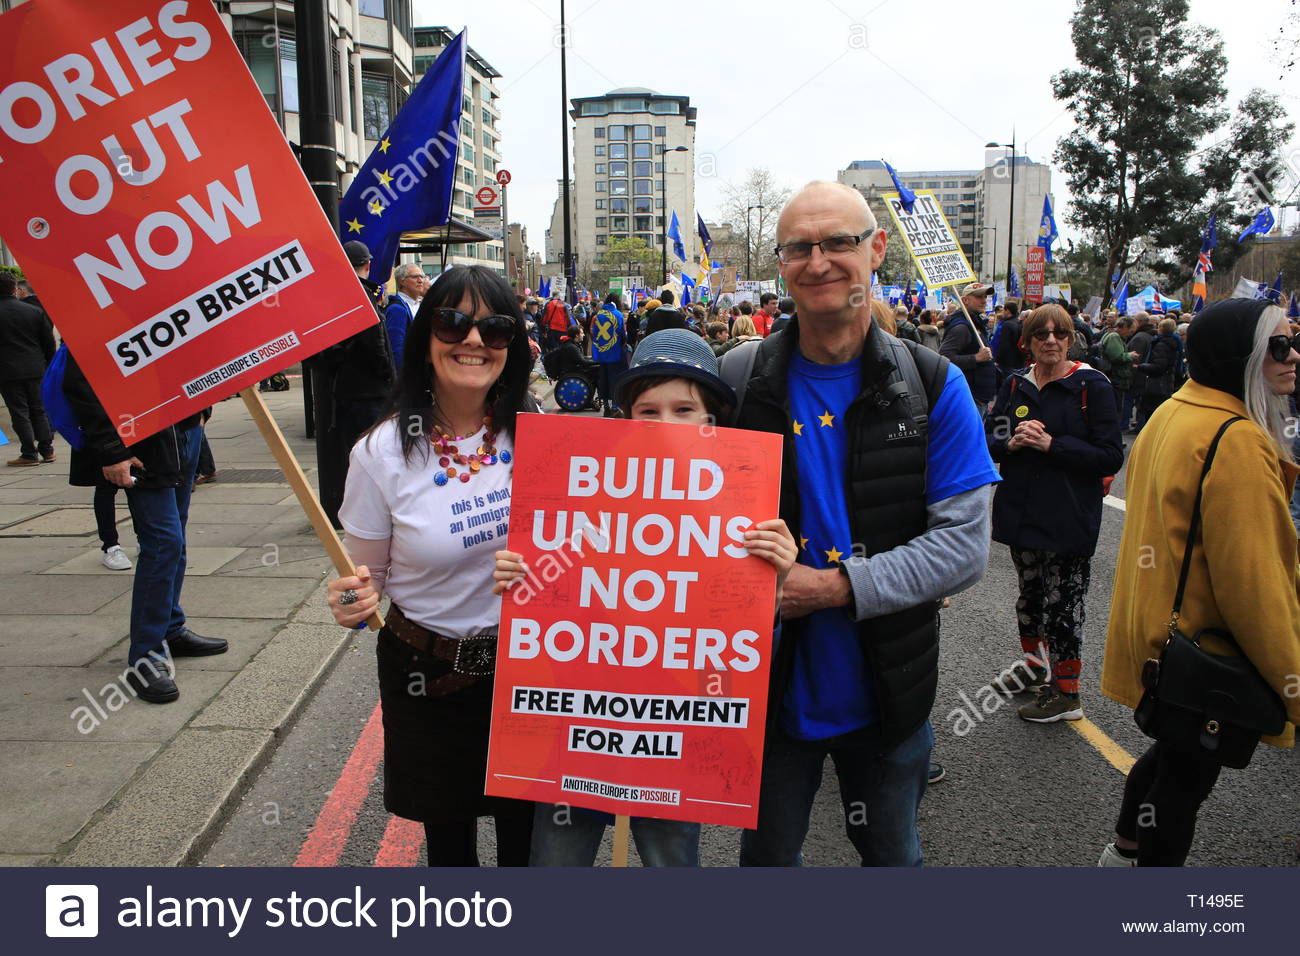 Archie et sa famille à la manifestation à Londres aujourd'hui Banque D'Images